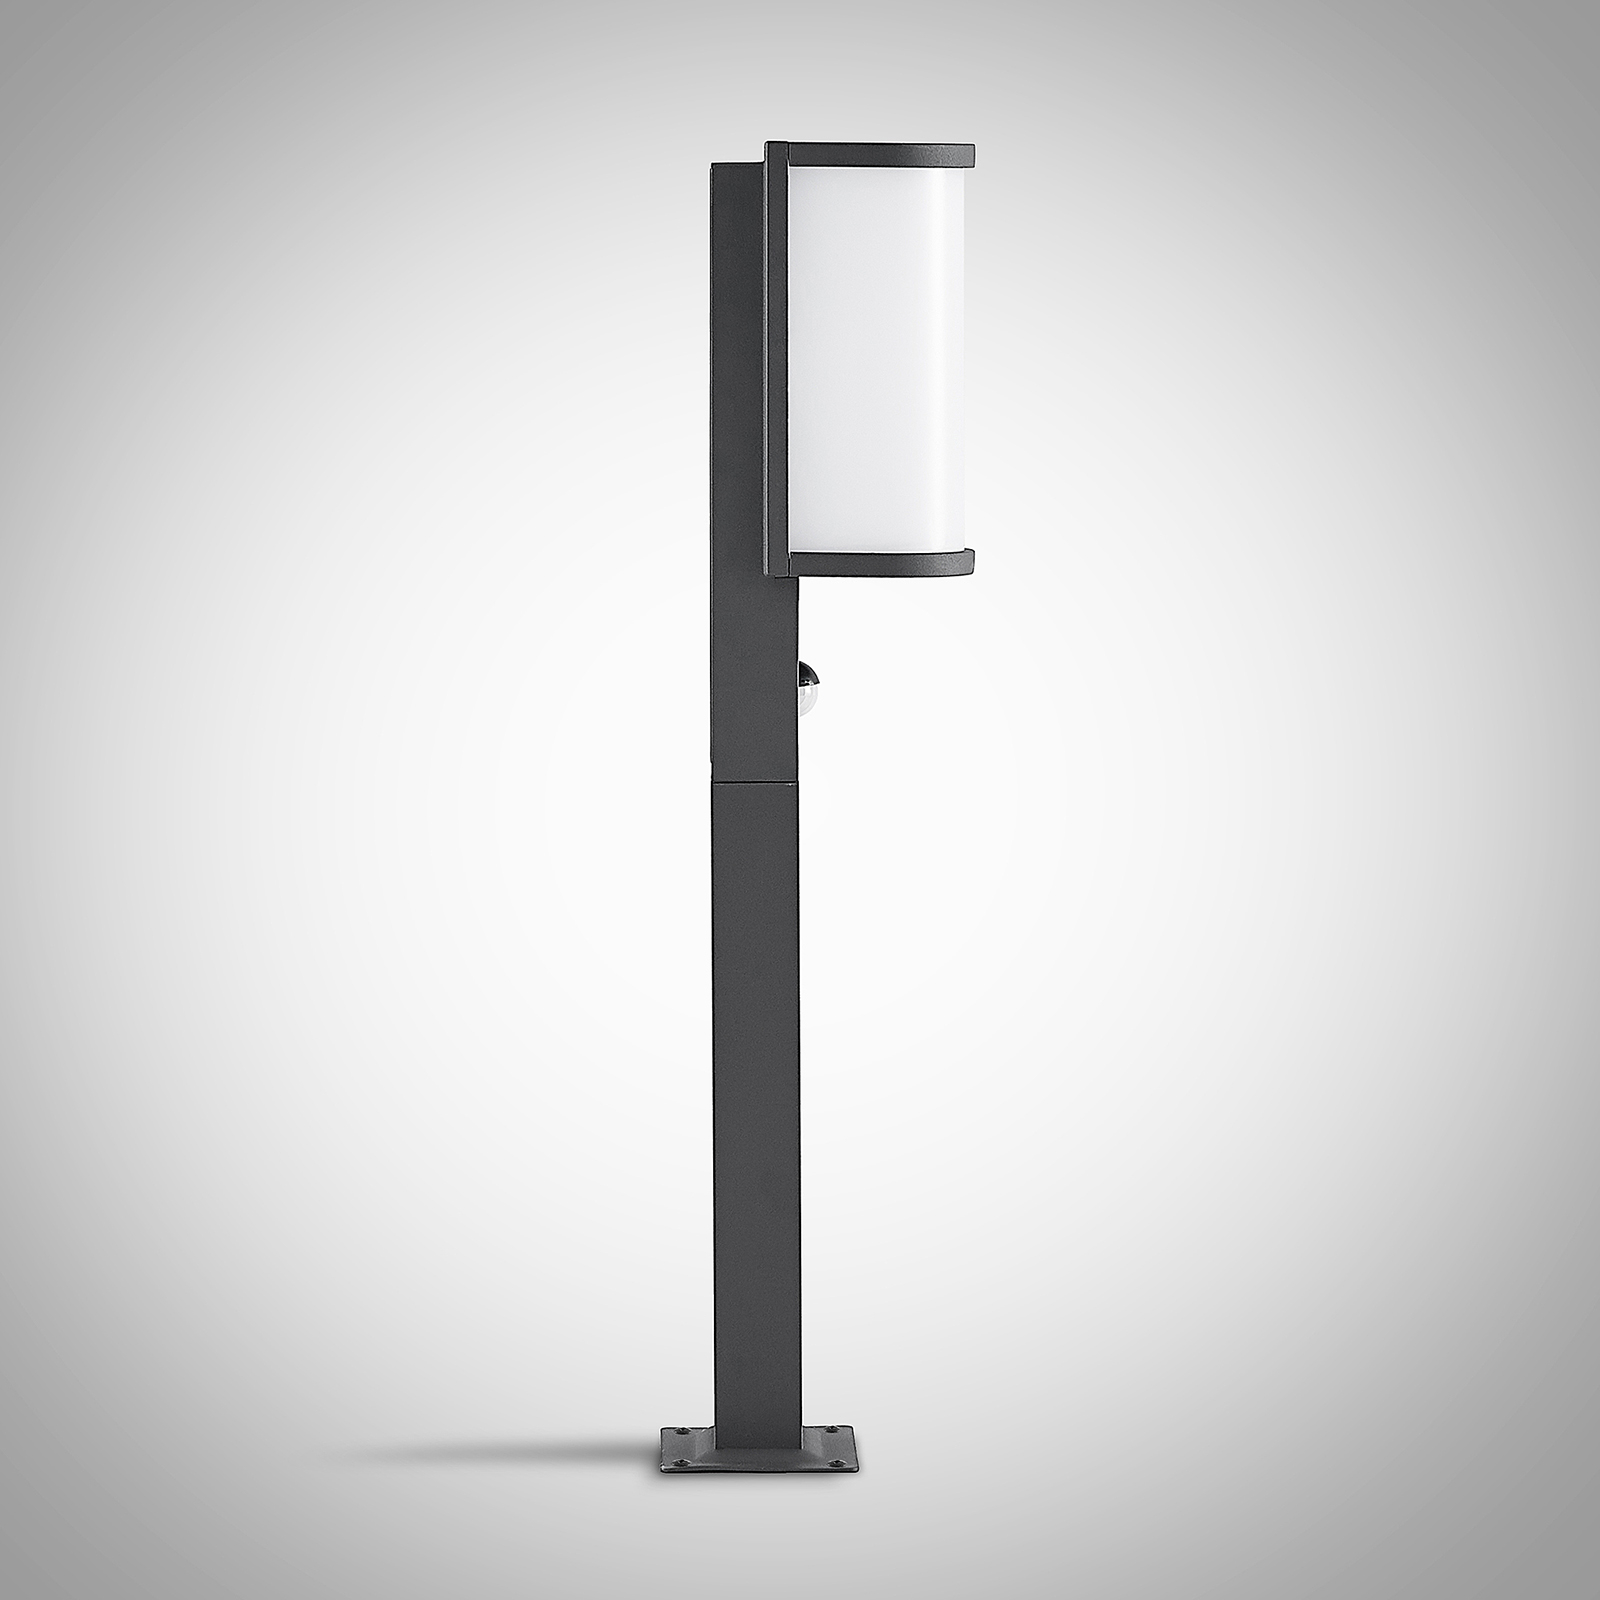 Lucande Jokum LED venk. světlo, IP54, 60 cm, čidlo